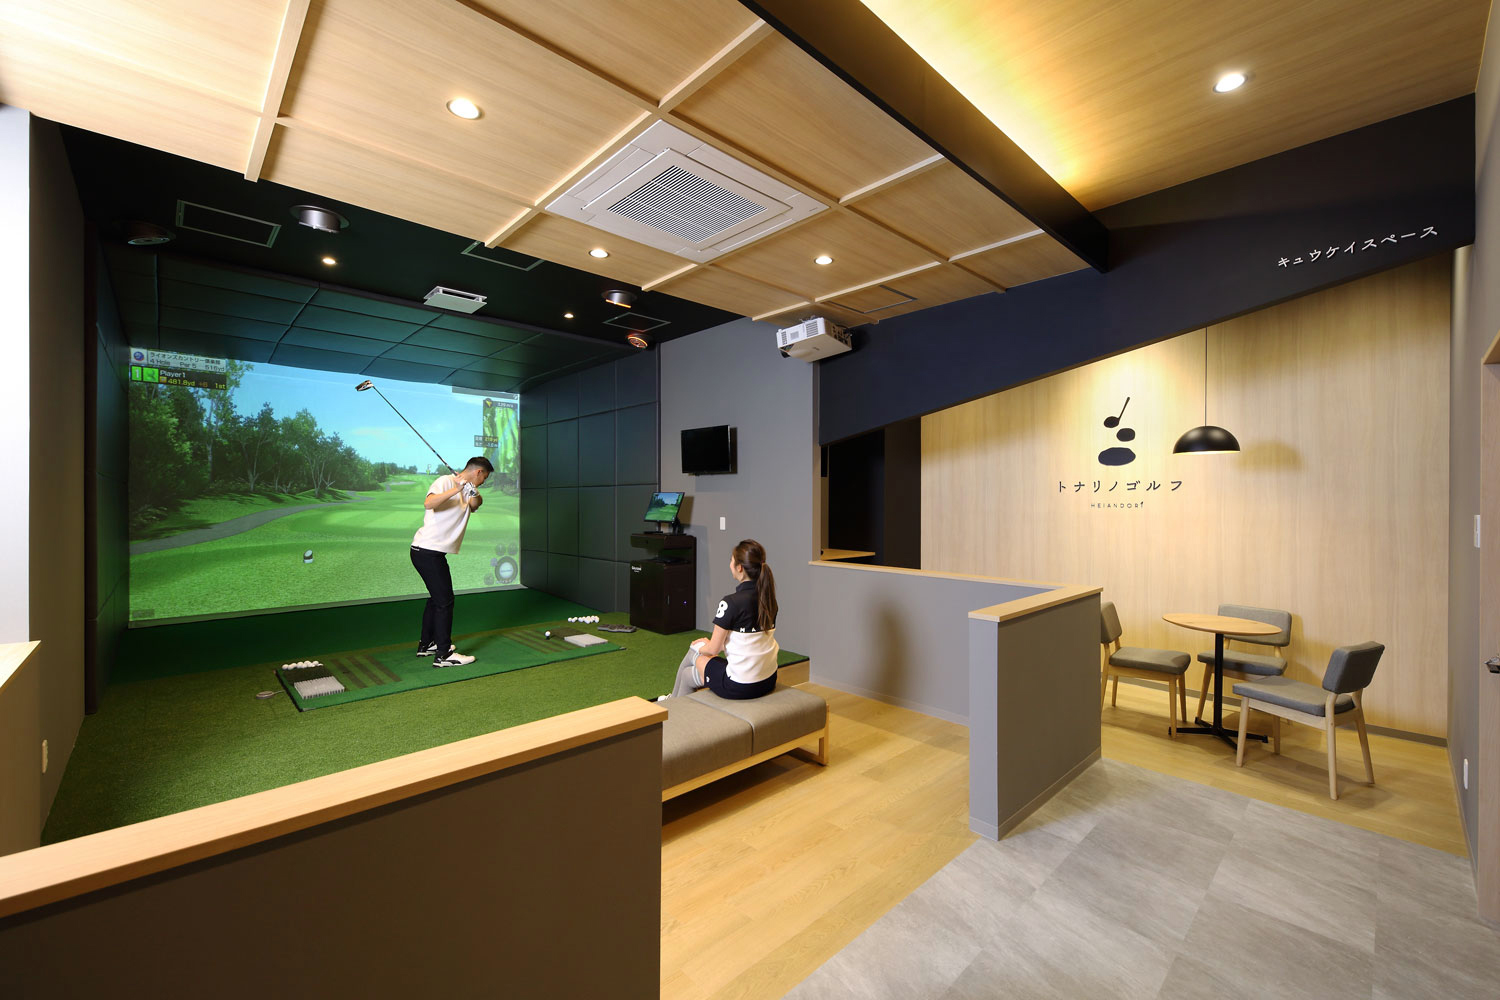 シミュレーションゴルフの店舗デザイン_愛知県名古屋市 トナリノゴルフ平安通店